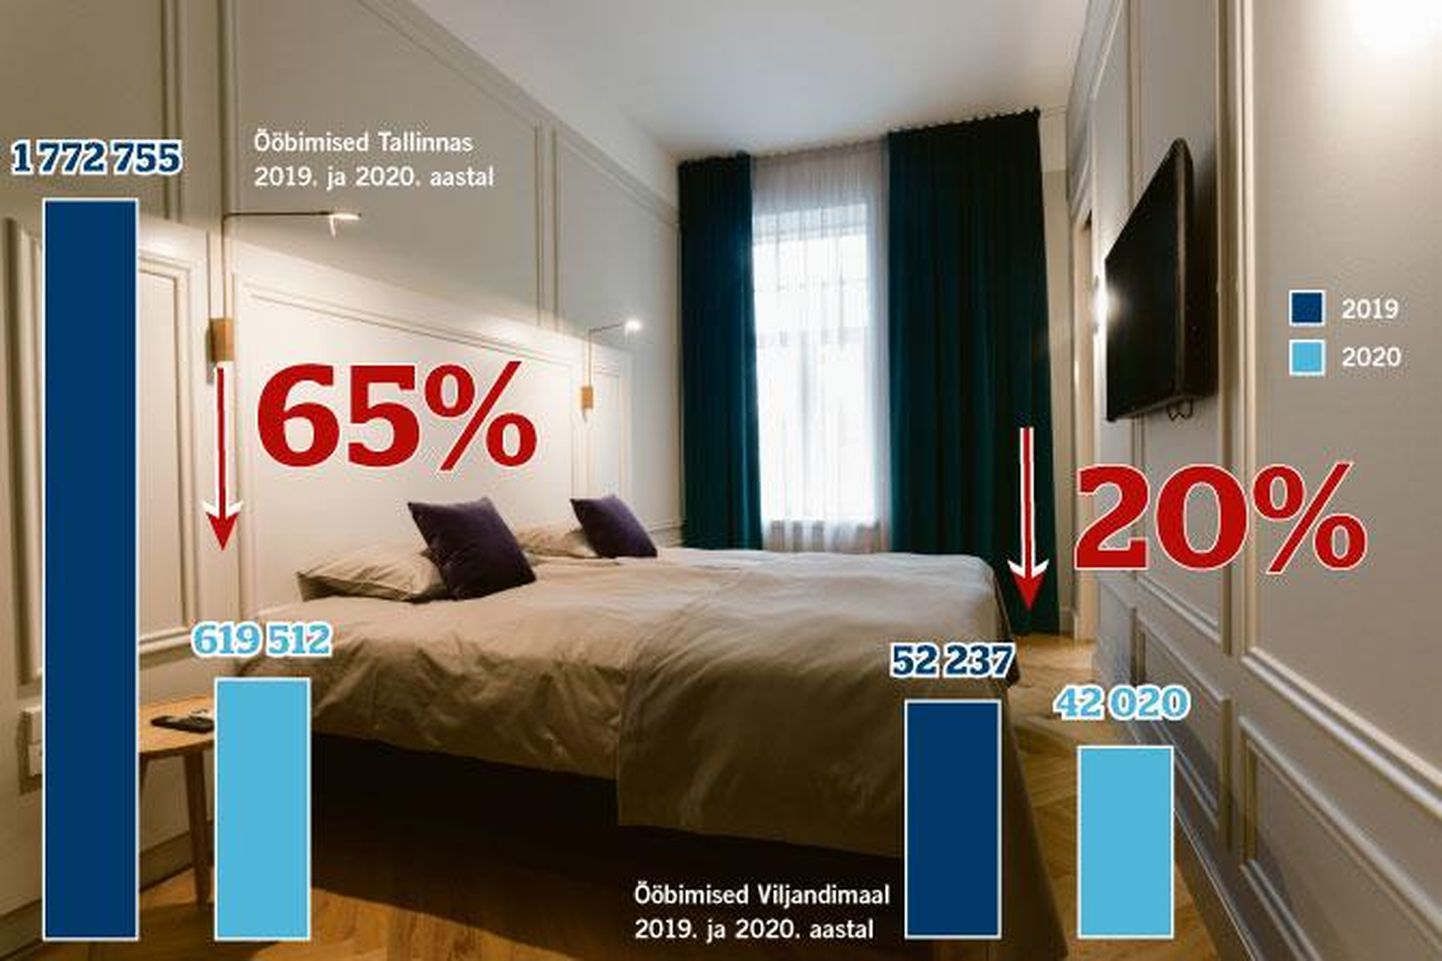 Kui Viljandimaa majutusasutuste klientide arvu kahanemine võrreldes tunamullusega oli 20 protsenti, siis Tallinnas oli see 65 protsenti. Pildil on Viljandi Park Hotelli tuba.